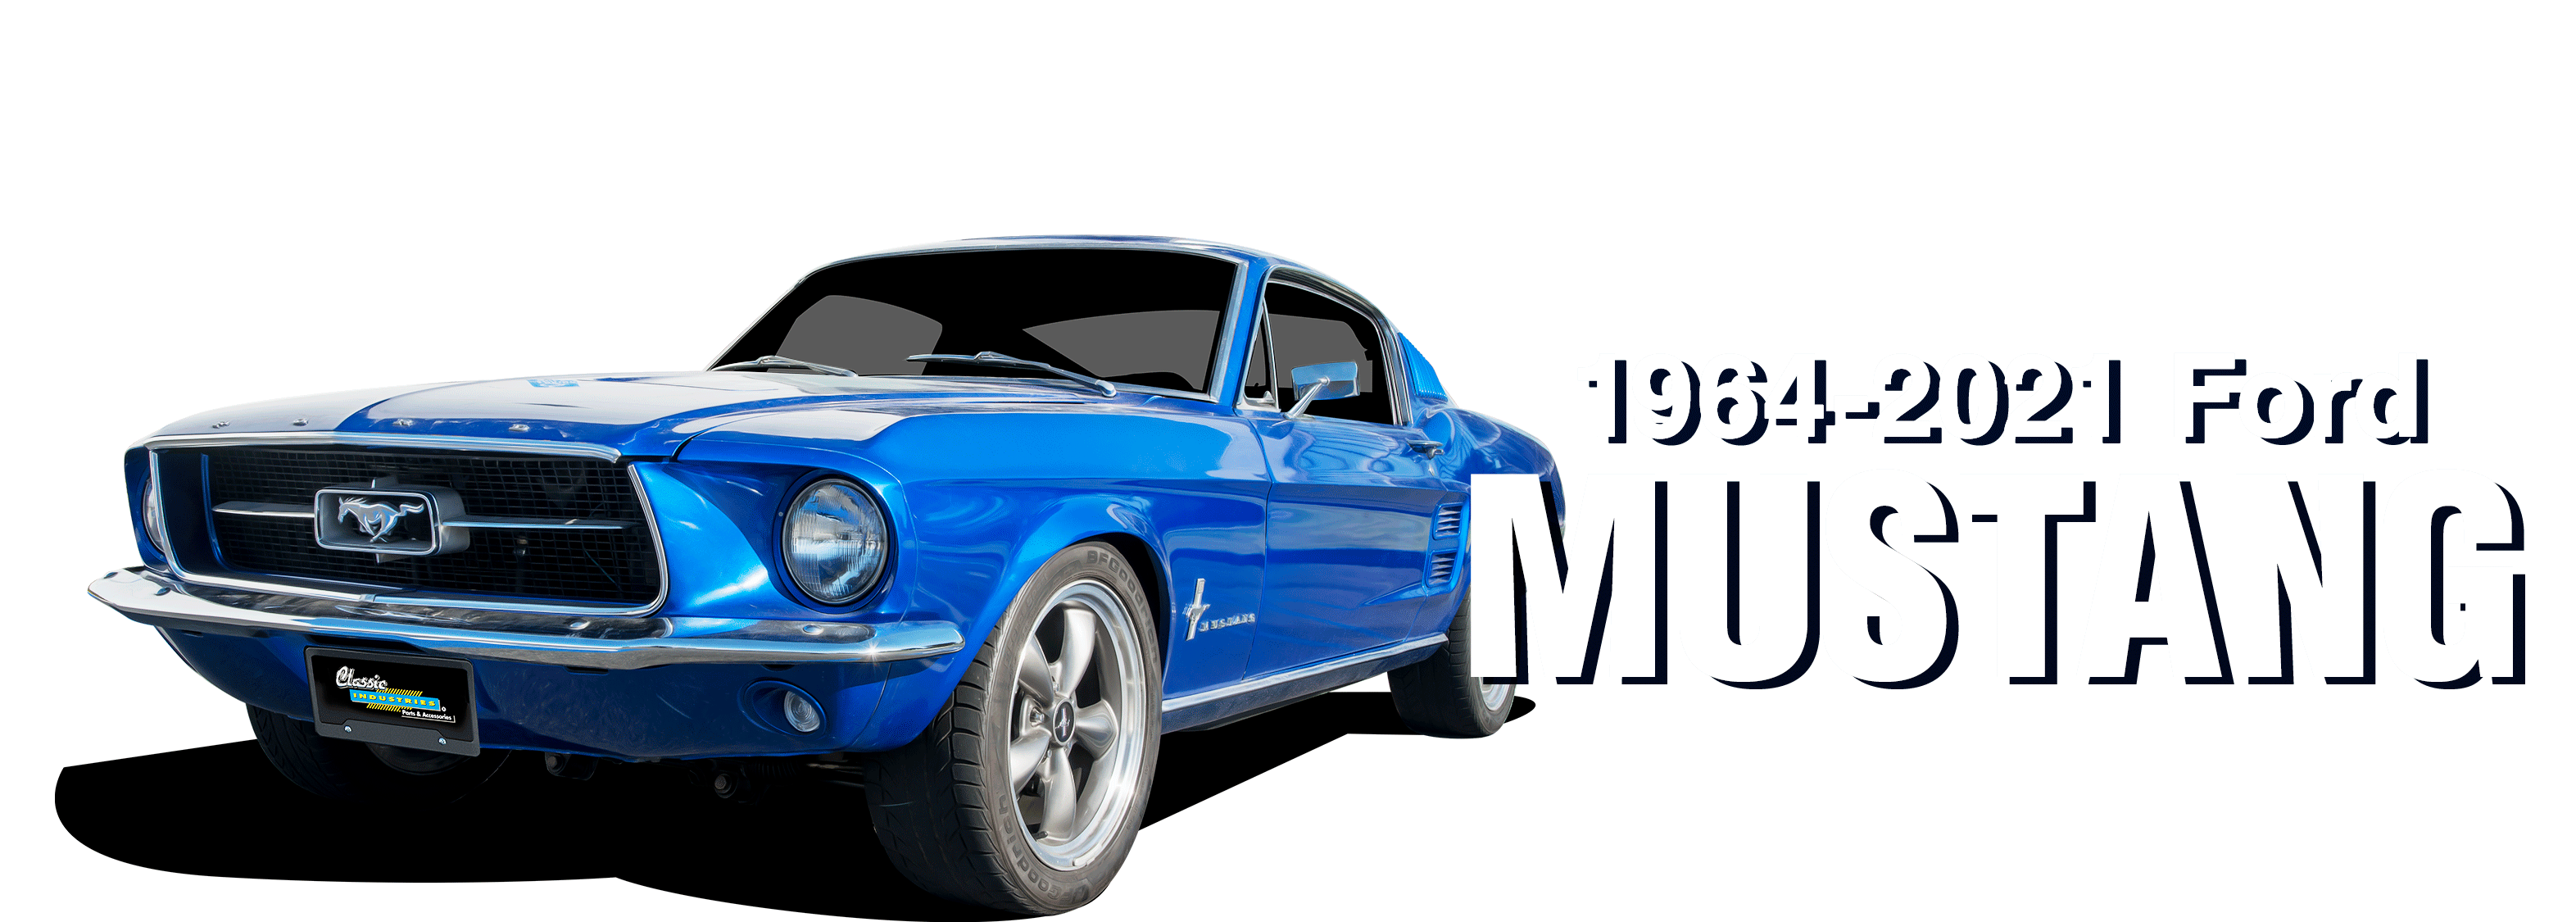 Ford-Mustang-vehicle-desktop_v2